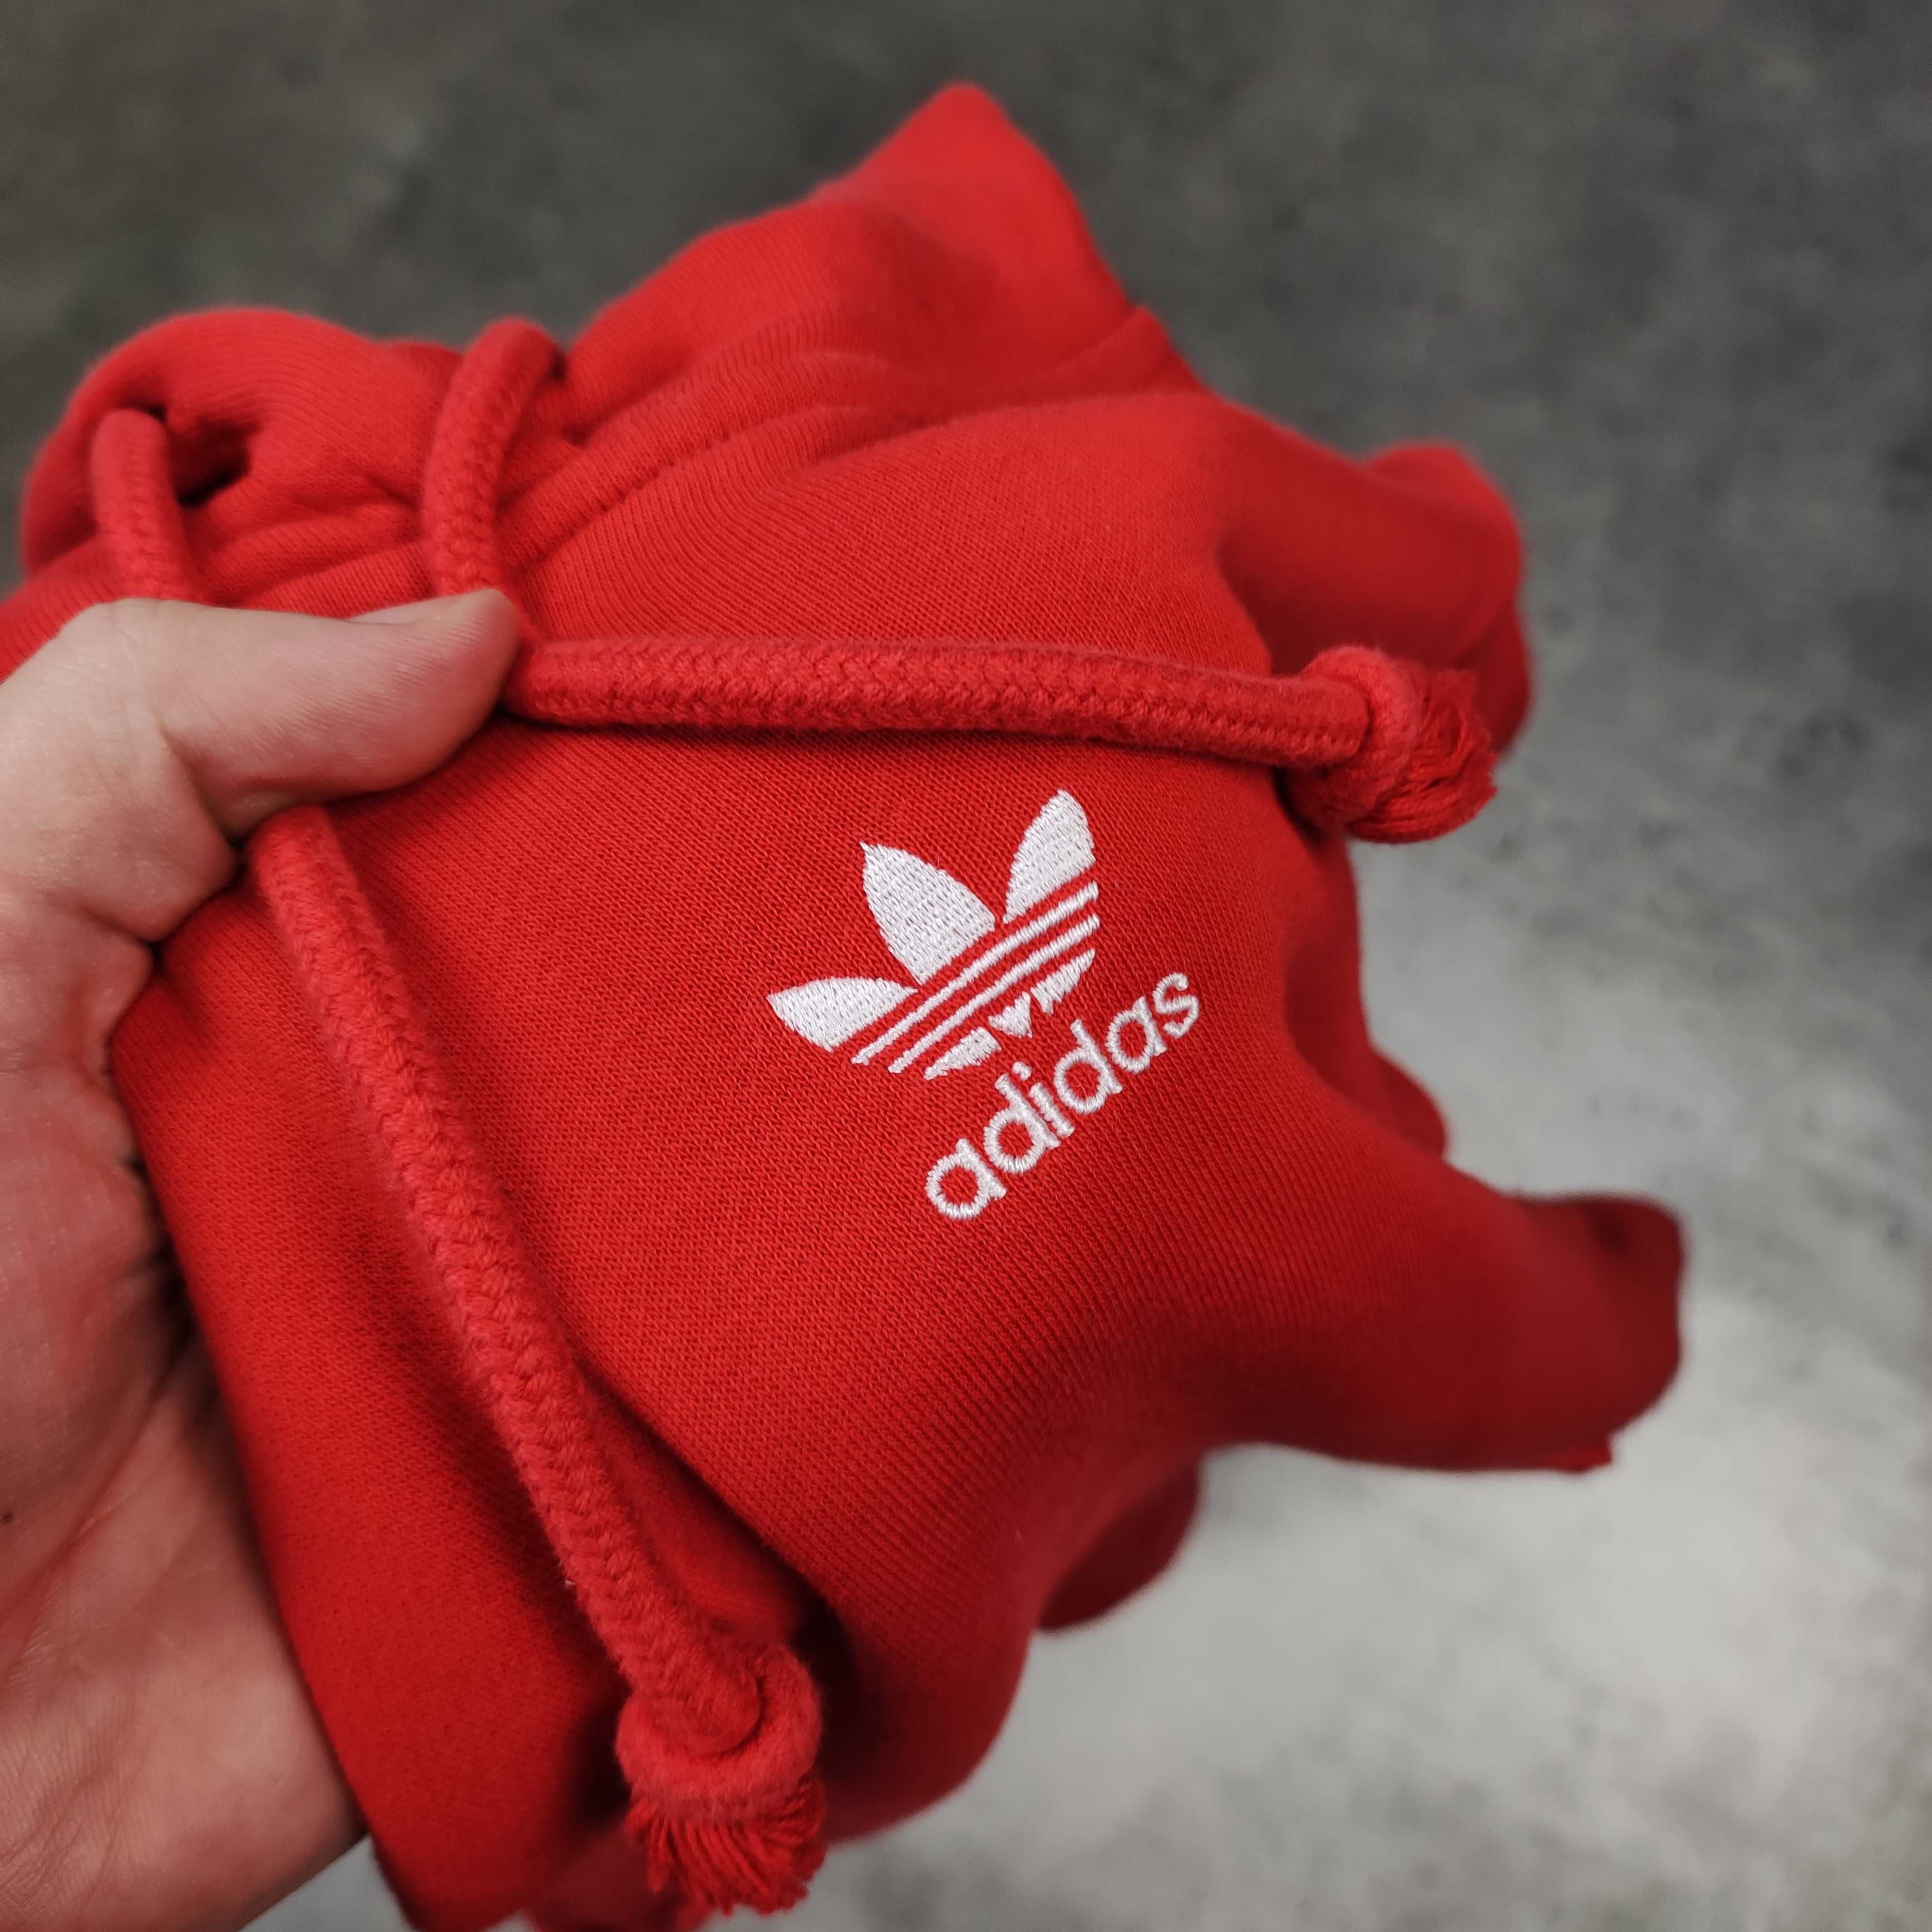 MĘSKA Bluza Klasyczna Małe Logo Haft Czerwona Adidas Bawełna Grubsza